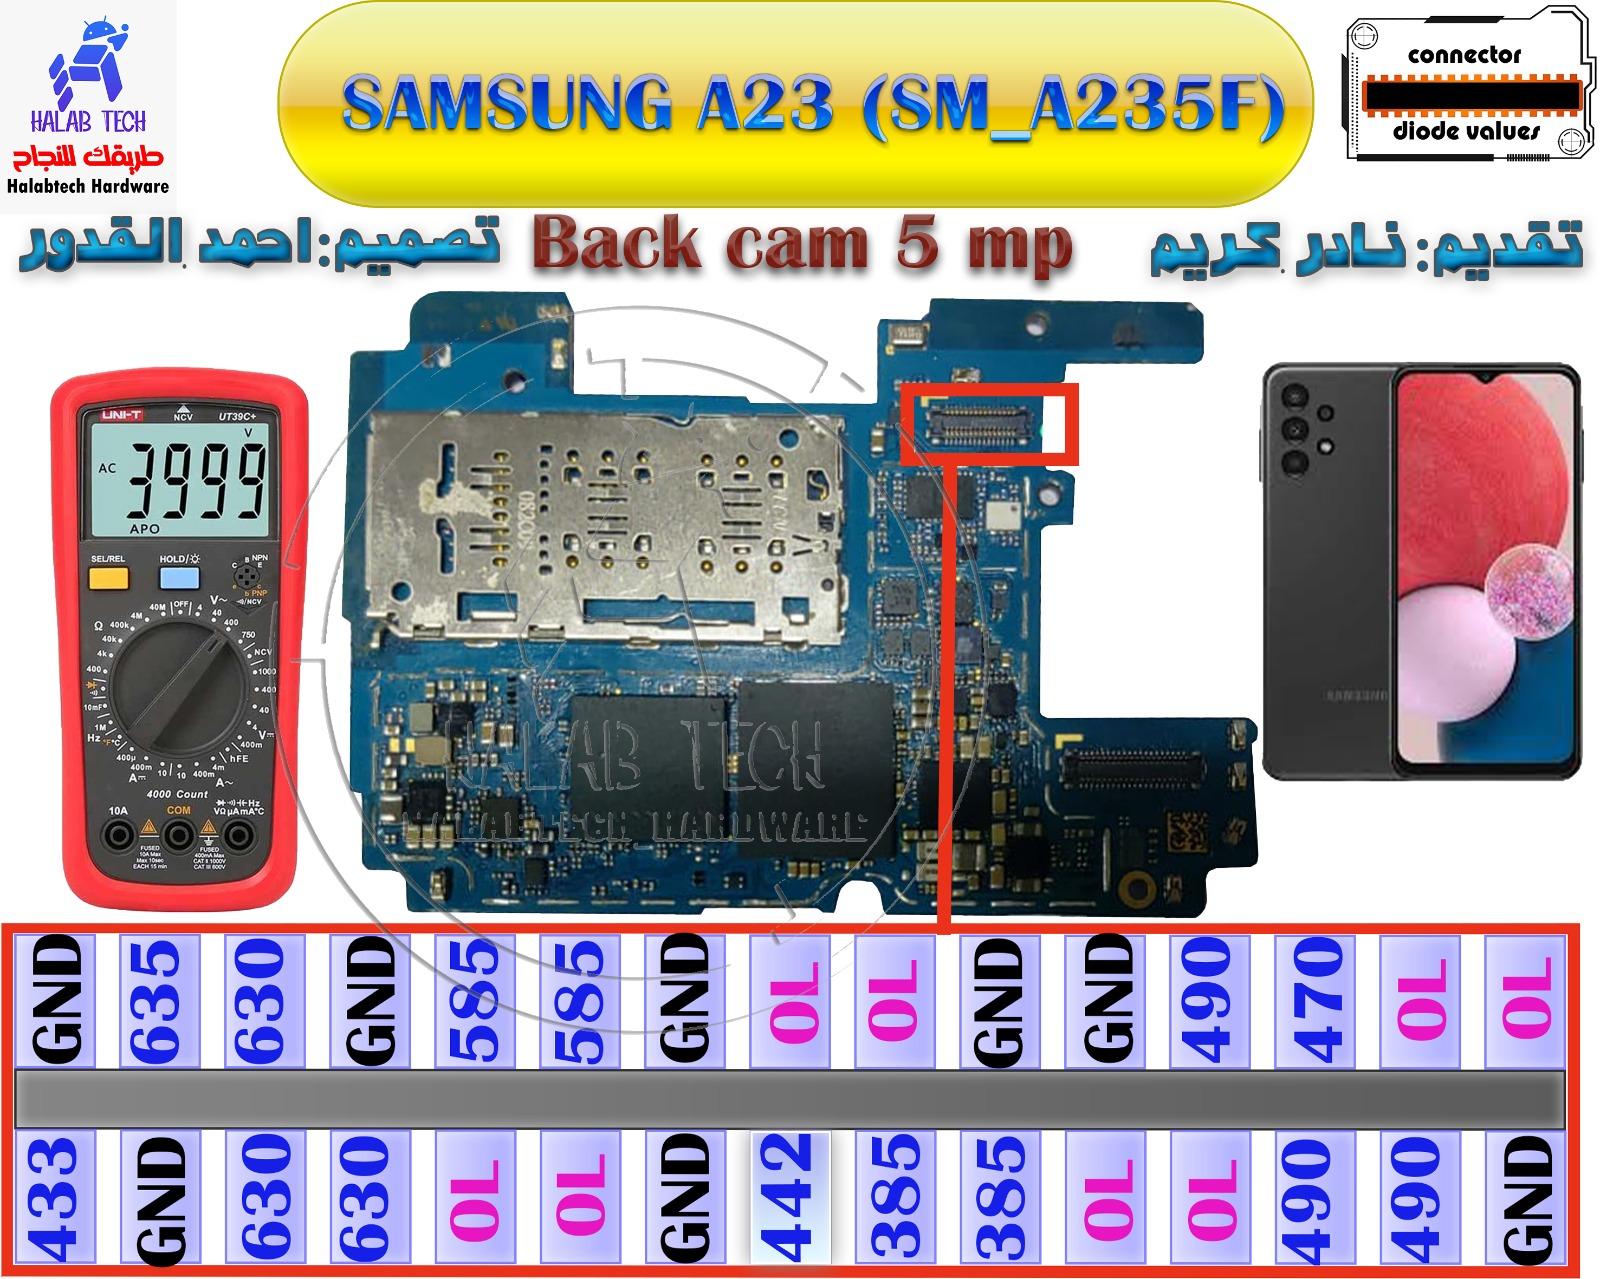 SamsungA23A235FBackcam5mpconnectordiodevalues.png.b6ba42c611d3c4e13d2f909c8a8d3dda.png